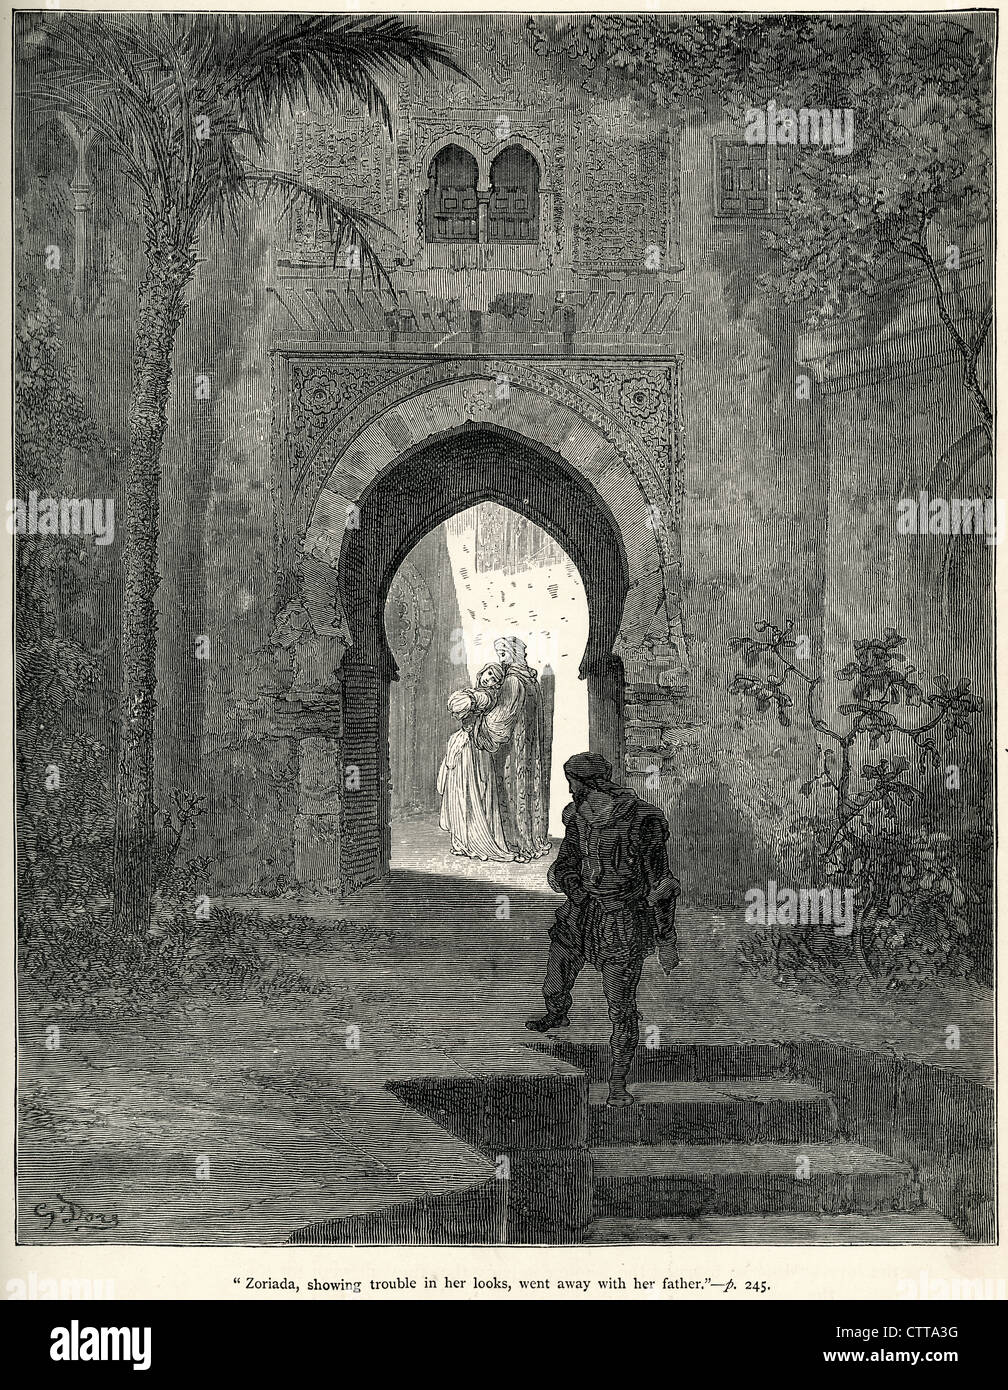 Zoriada, mit Mühe in ihr Aussehen ging mit ihrem Vater. Illustration von Gustave Dore von Don Quijote. Stockfoto